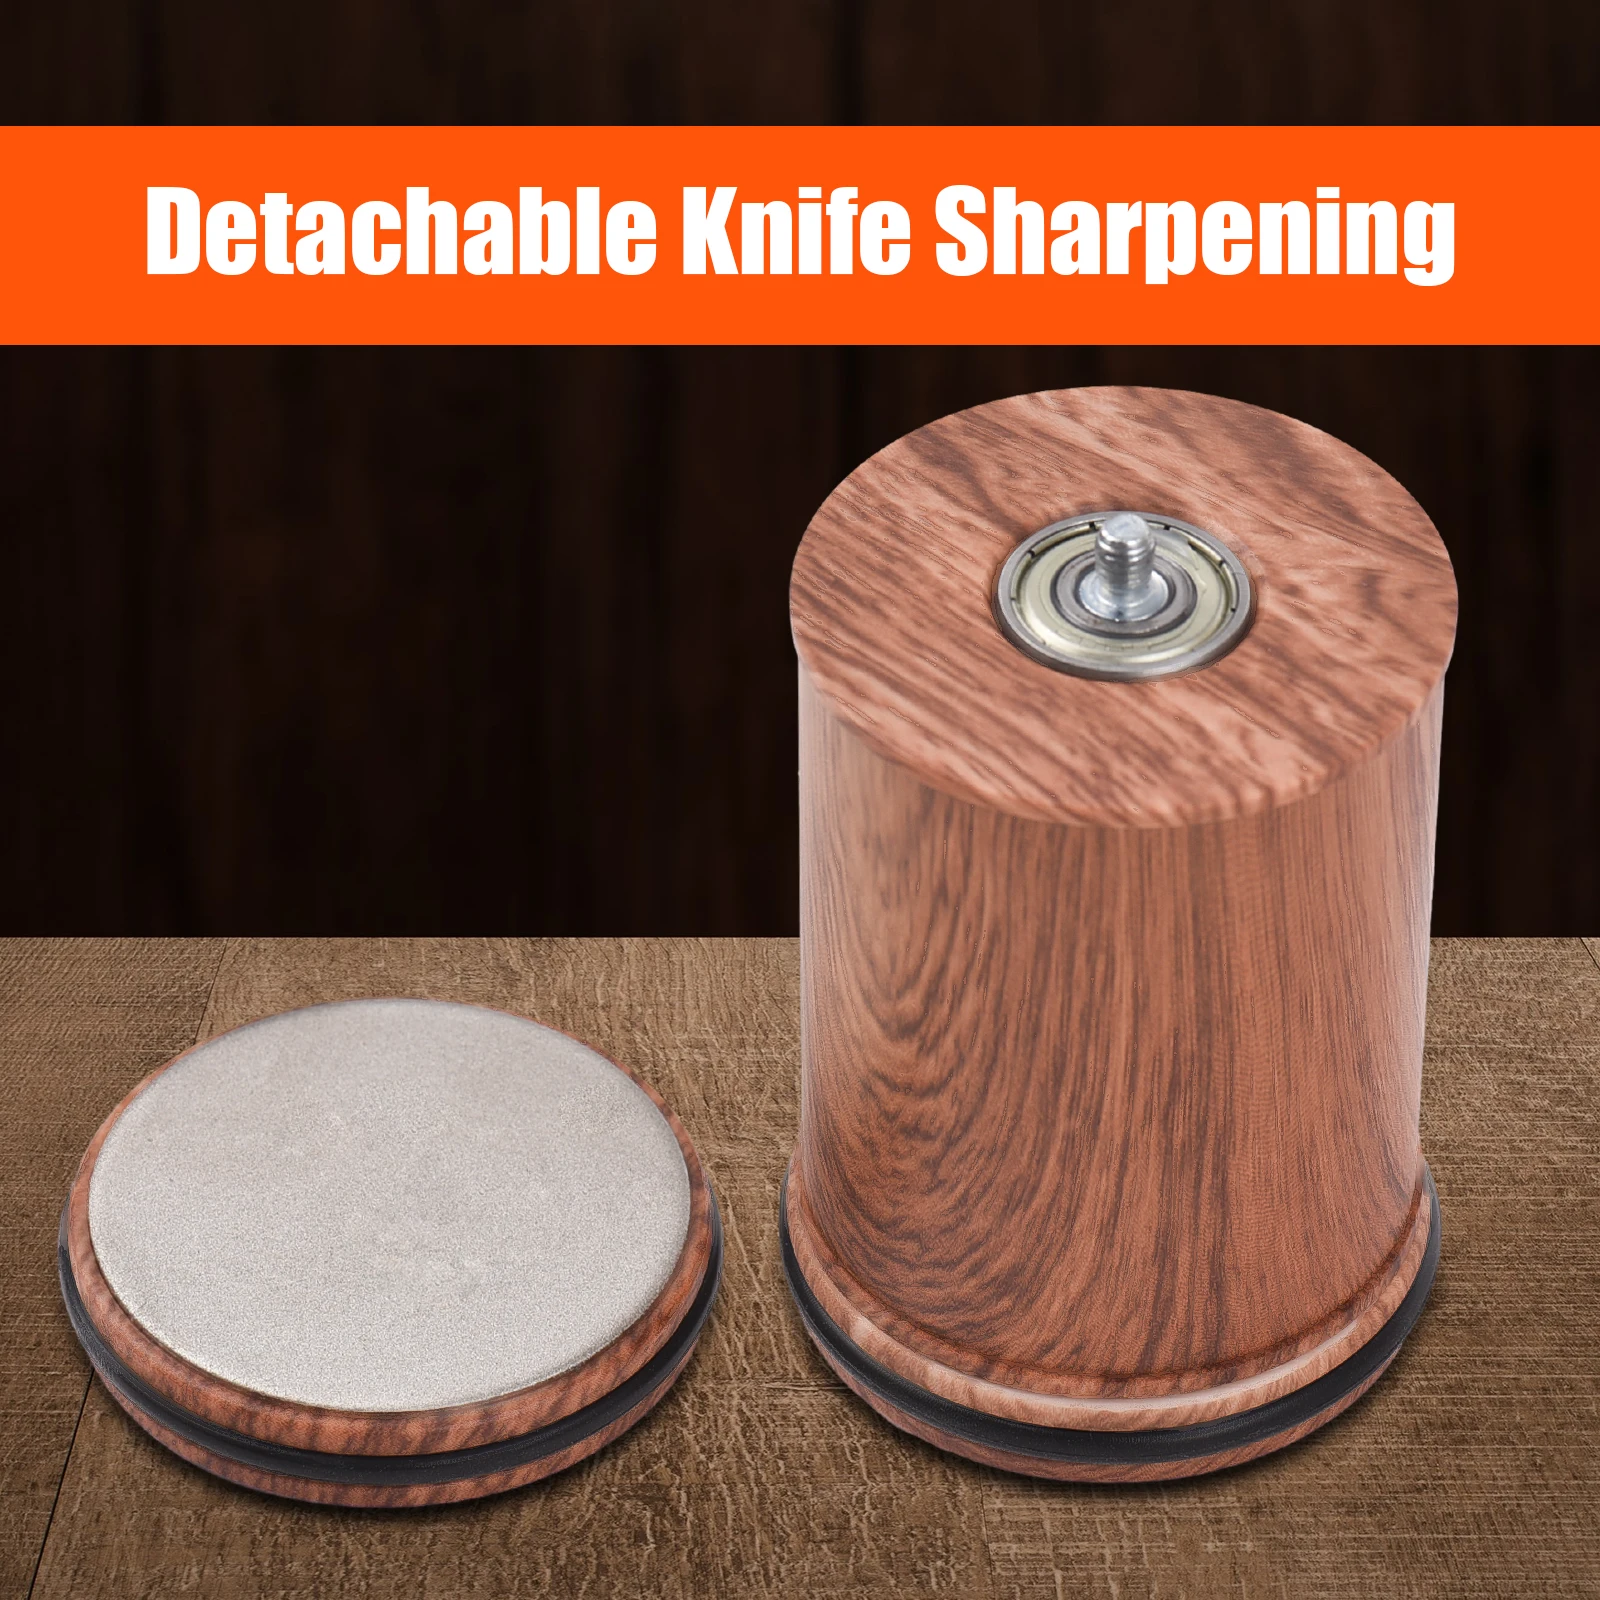 https://ae01.alicdn.com/kf/S9fdfb00a814740fa8c76a0f4c81aaf2dX/Tumbler-Rolling-Knife-Sharpener-Detachable-Knife-Sharpening-Rolling-Knife-Sharpening-for-Pocket-Kitchen-Knives-Che-f.jpg